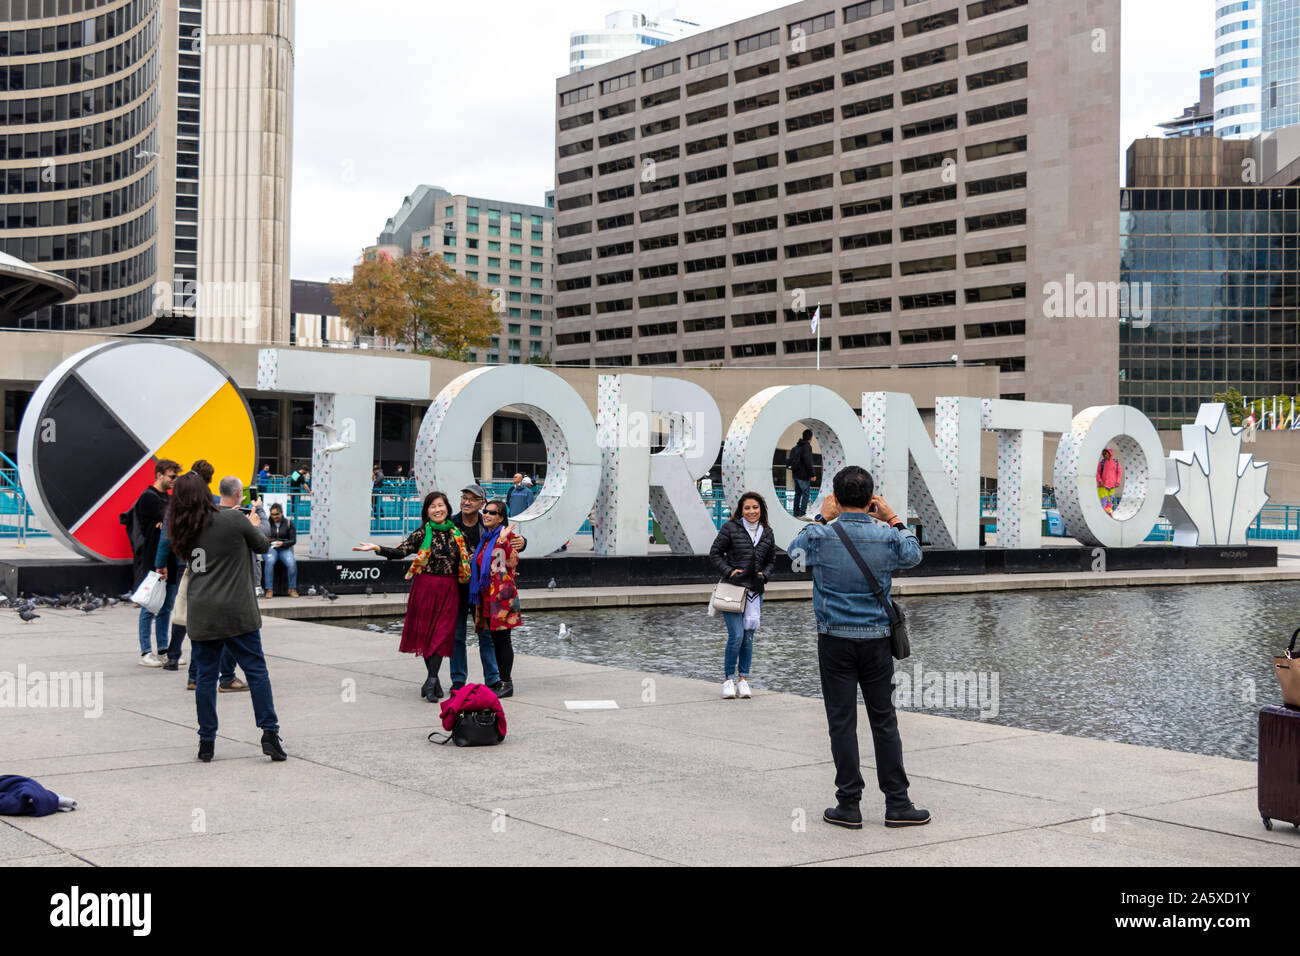 Les touristes prennent des photos devant le panneau de Toronto à l'hôtel de ville de Toronto, sur Nathan Philips Square. Banque D'Images